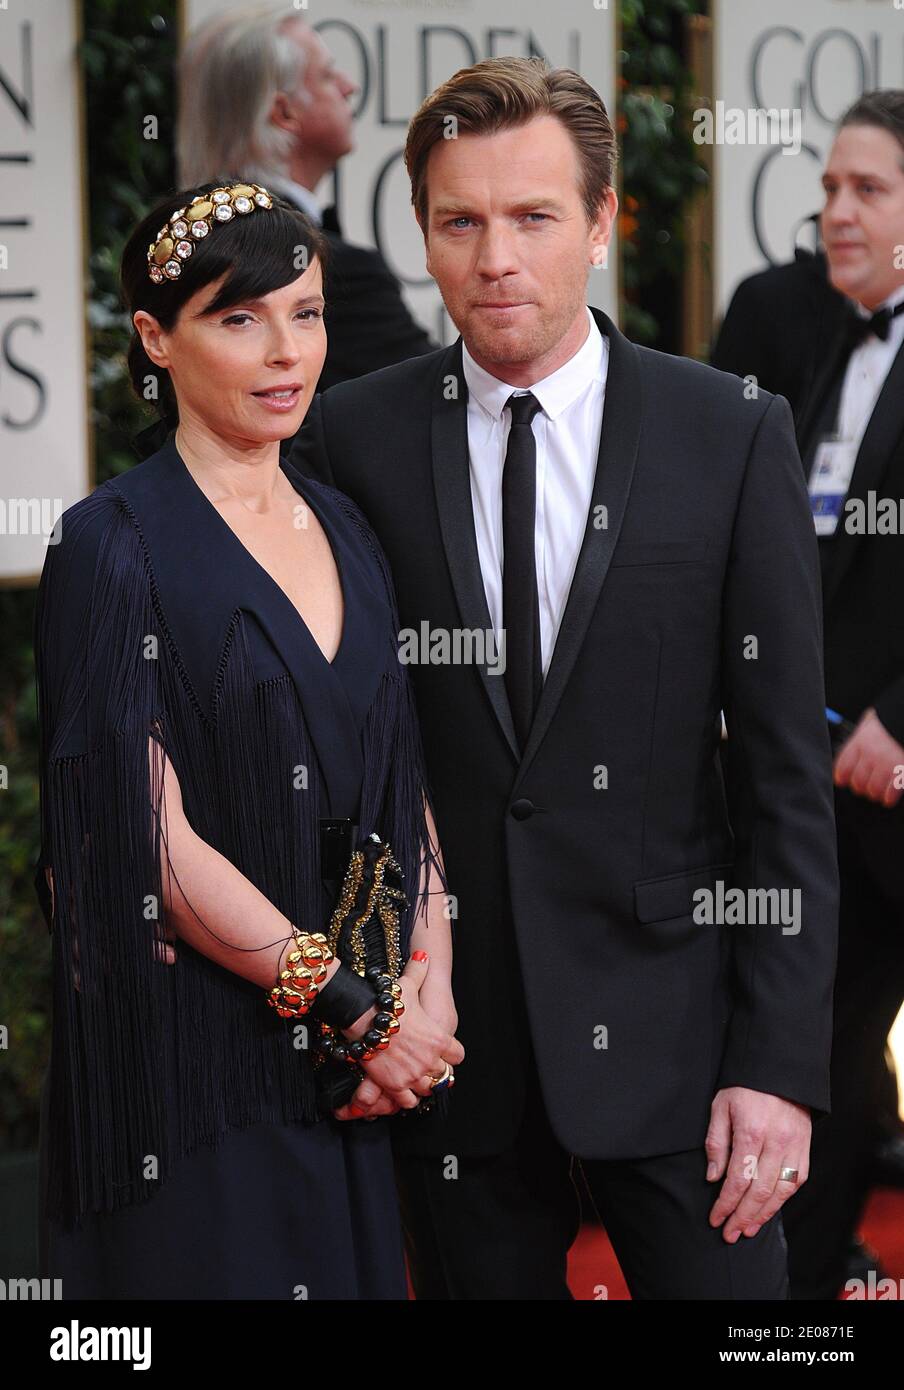 Ewan McGregor et sa femme Eve arrivent pour la 69e cérémonie annuelle des Golden Globe Awards, qui s'est tenue à l'hôtel Beverly Hilton de Los Angeles, CA, Etats-Unis, le 15 janvier 2012. Photo de Lionel Hahn/ABACAPRESS.COM Banque D'Images